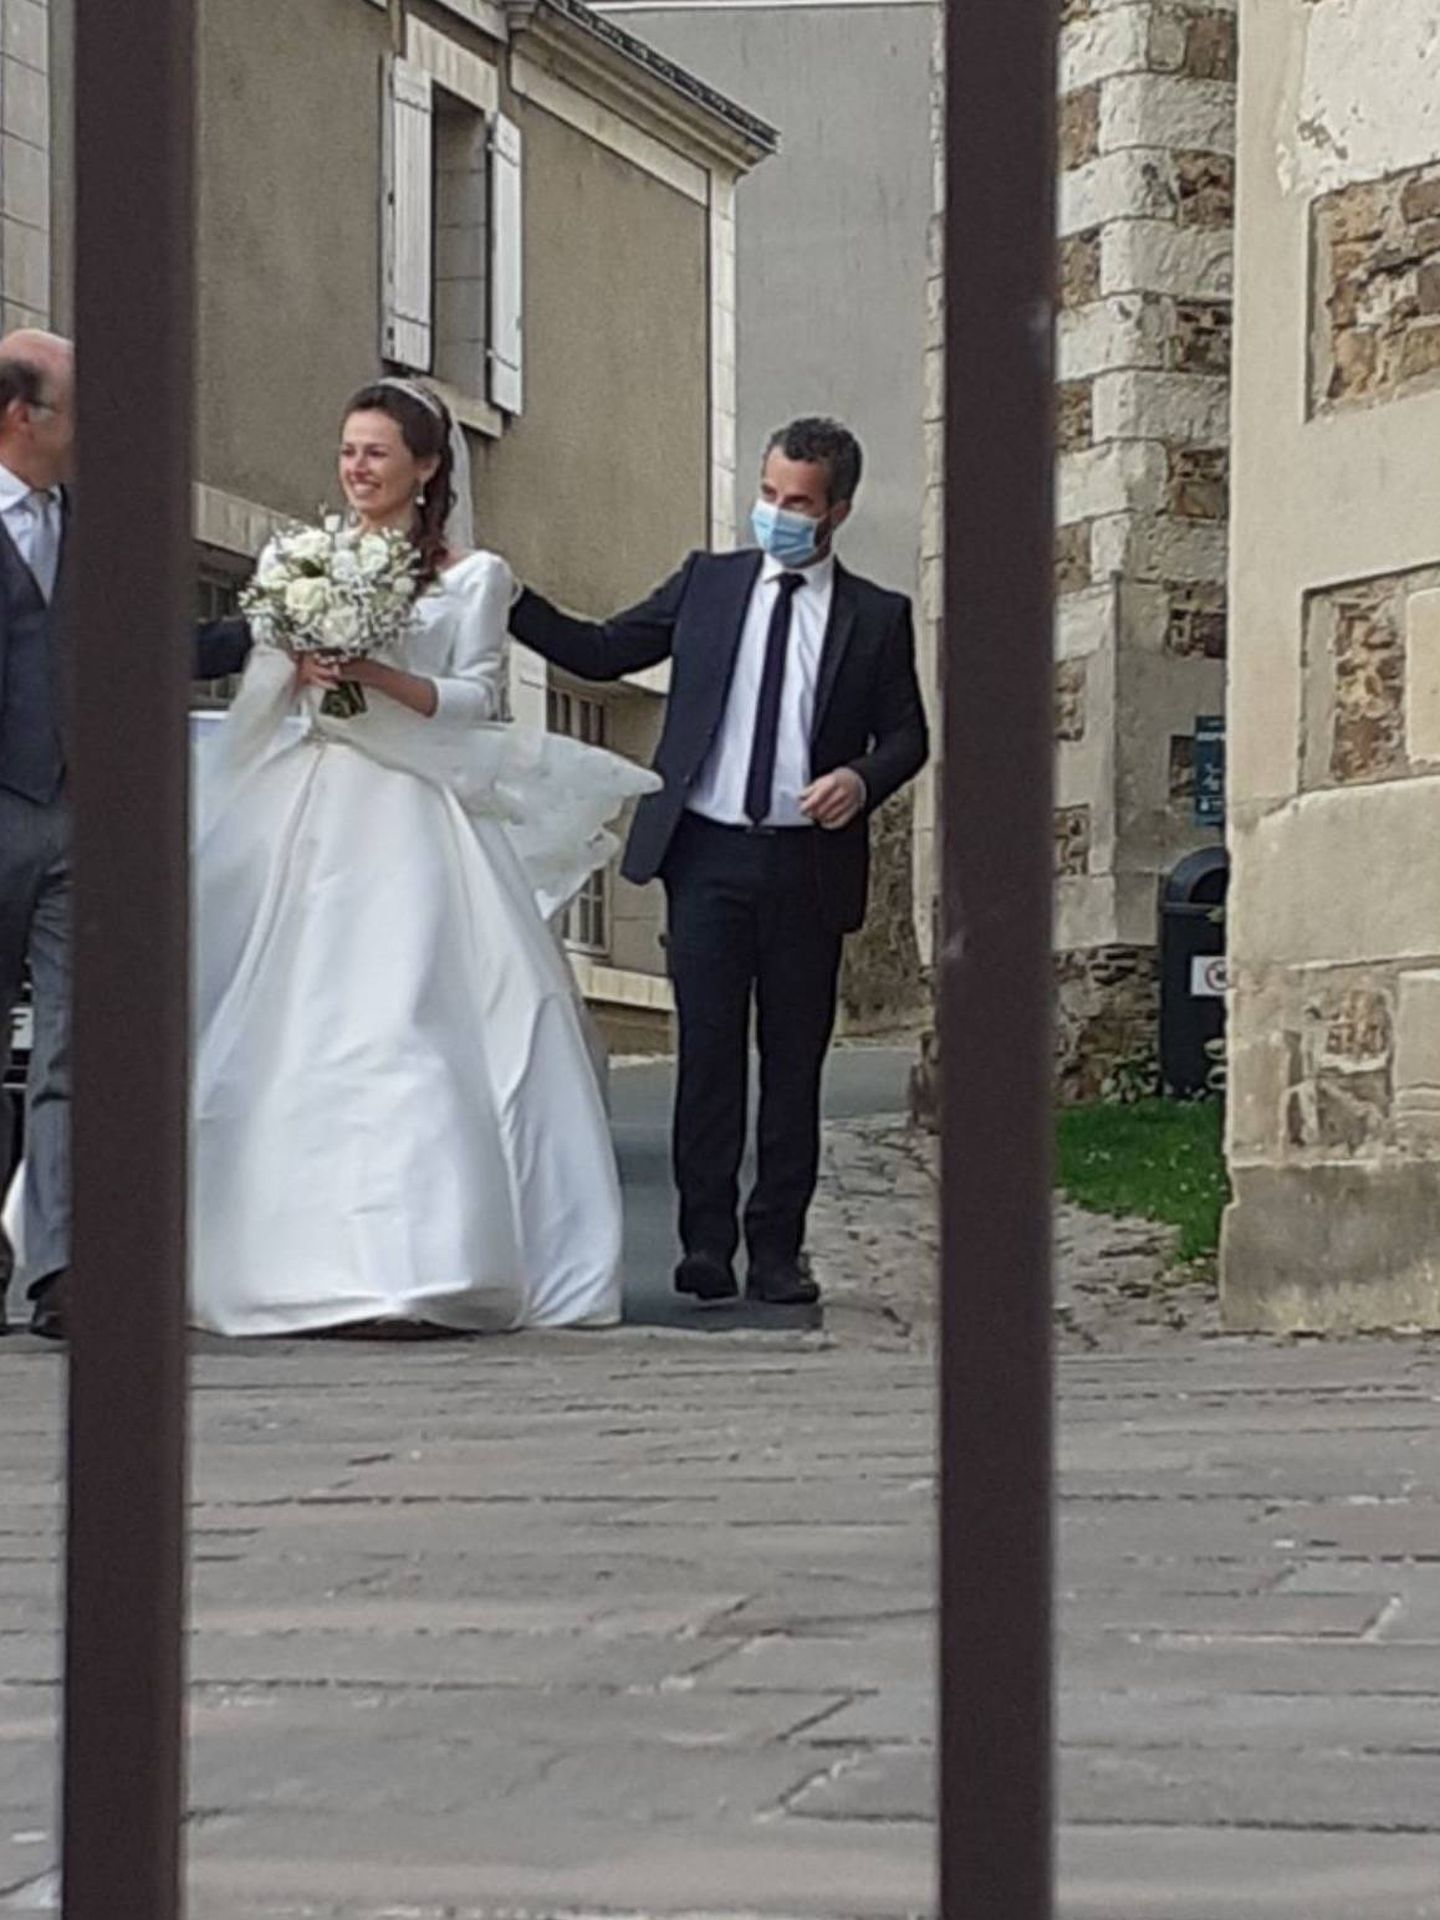 Délia de Cossé-Brissac, en su boda el pasado sábado. (Redes)